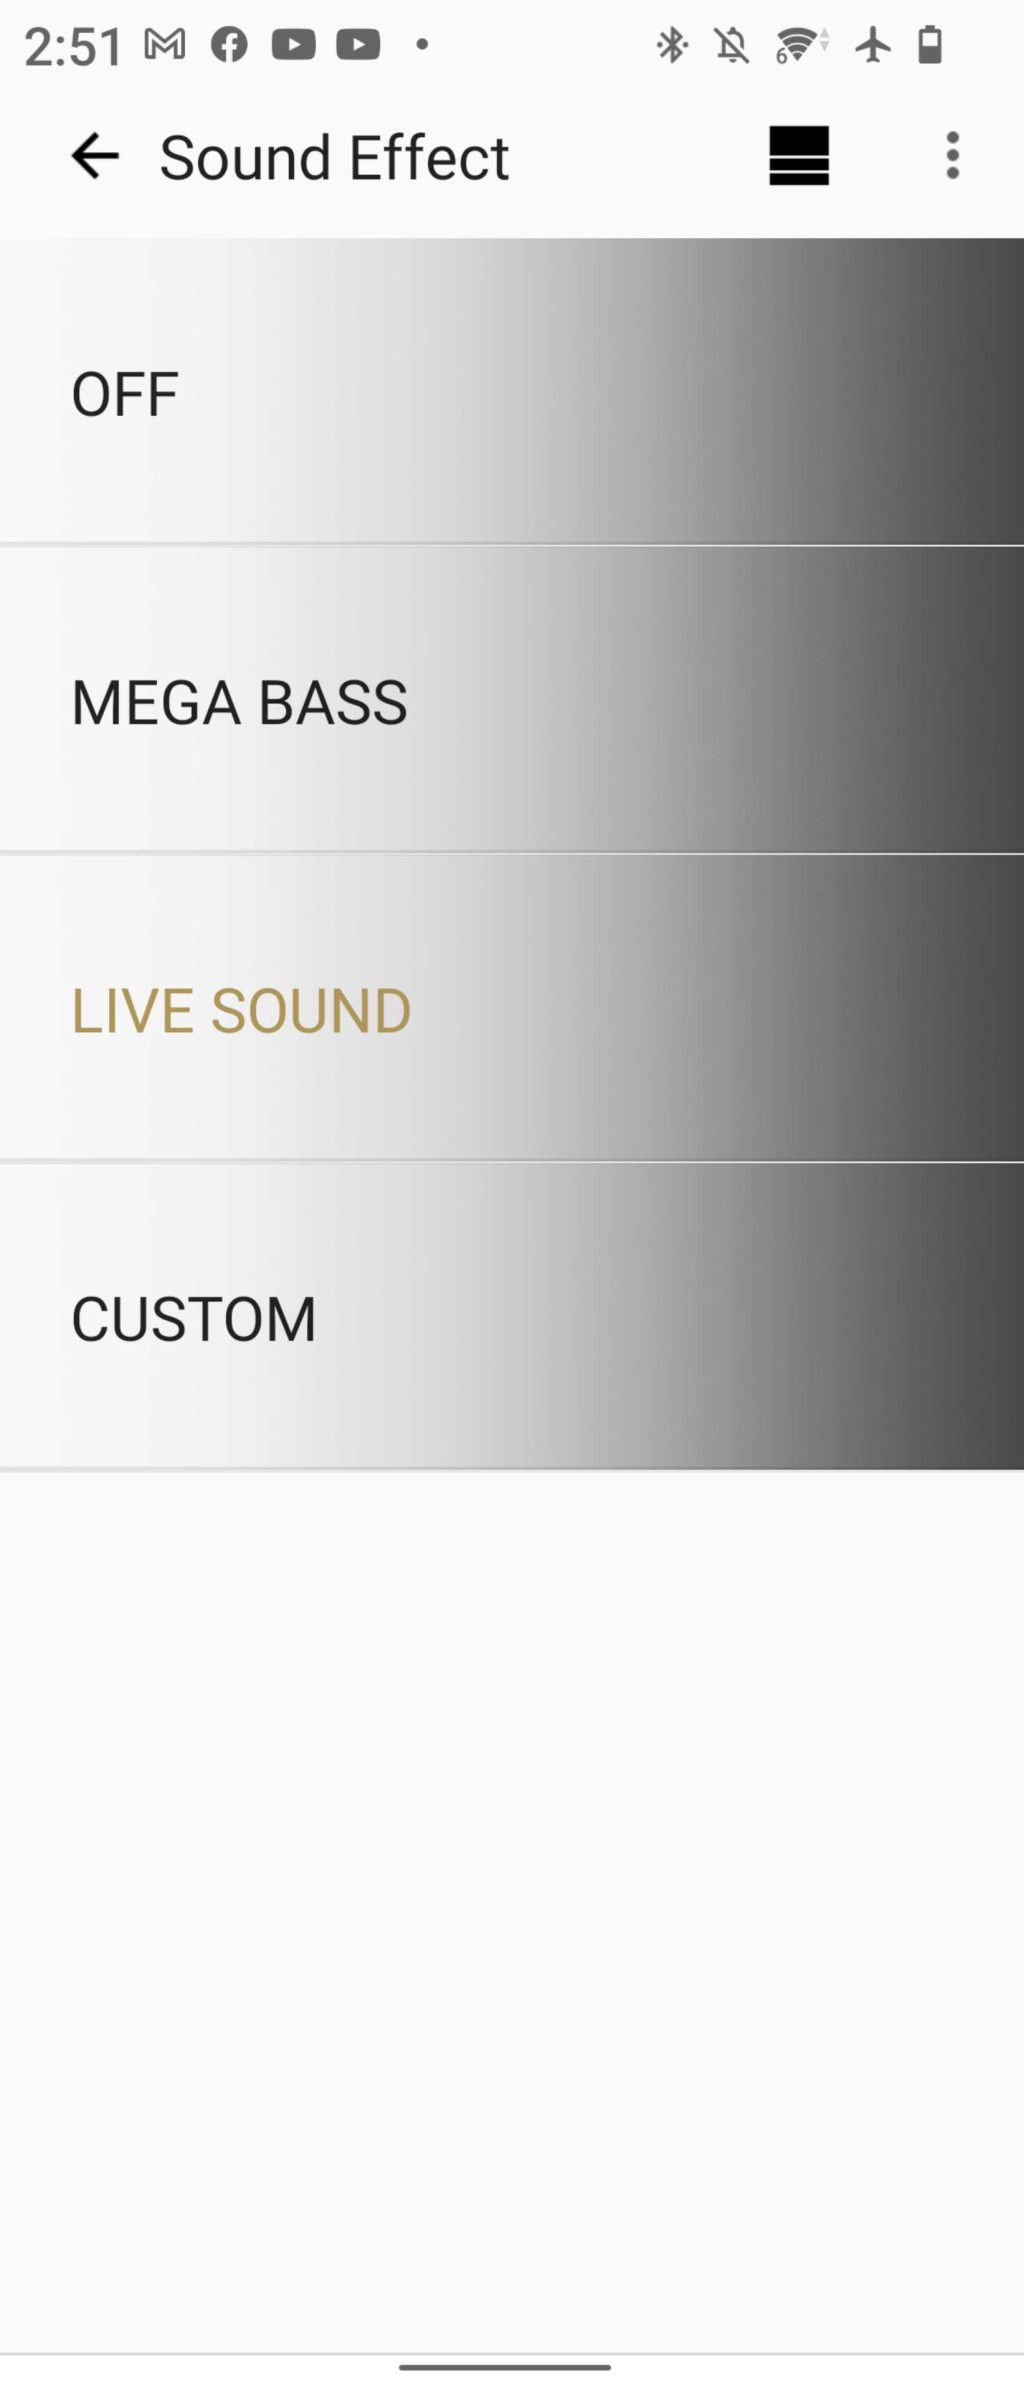 可以經App開啟LIVE SOUND模式，令聲音更有臨場感。